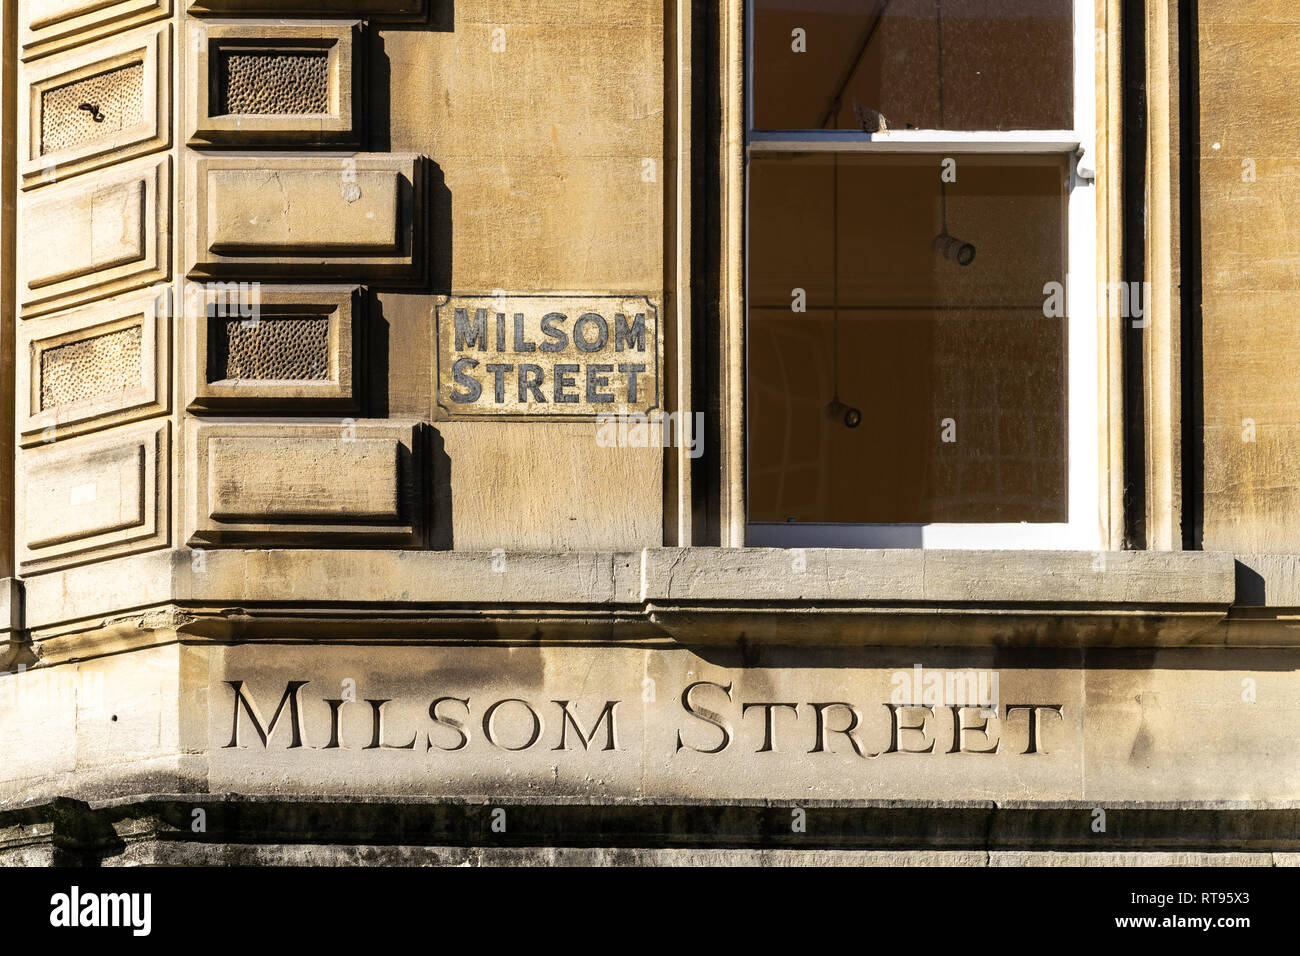 Deux versions différentes de l'Milsom Street sign numéro ci-dessus 1 Milsom Street, Bath, Angleterre Banque D'Images